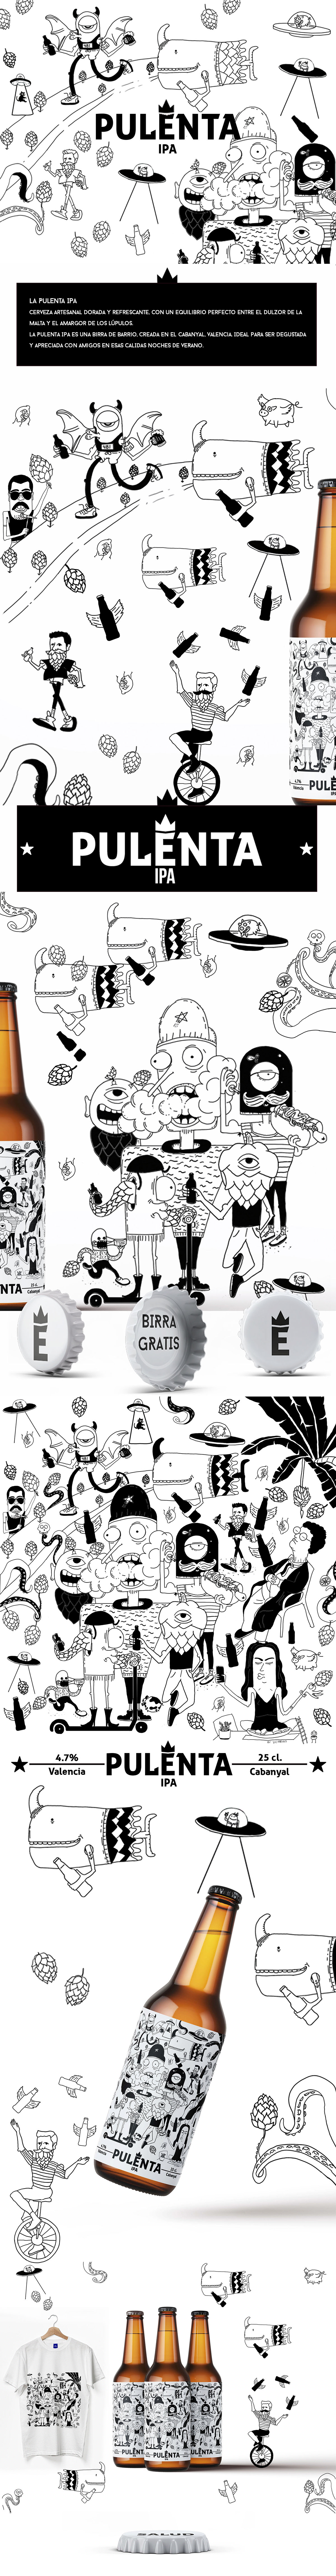 beer Bier cerveza Cerveza Artesanal craft beer identidade visual ilustracion